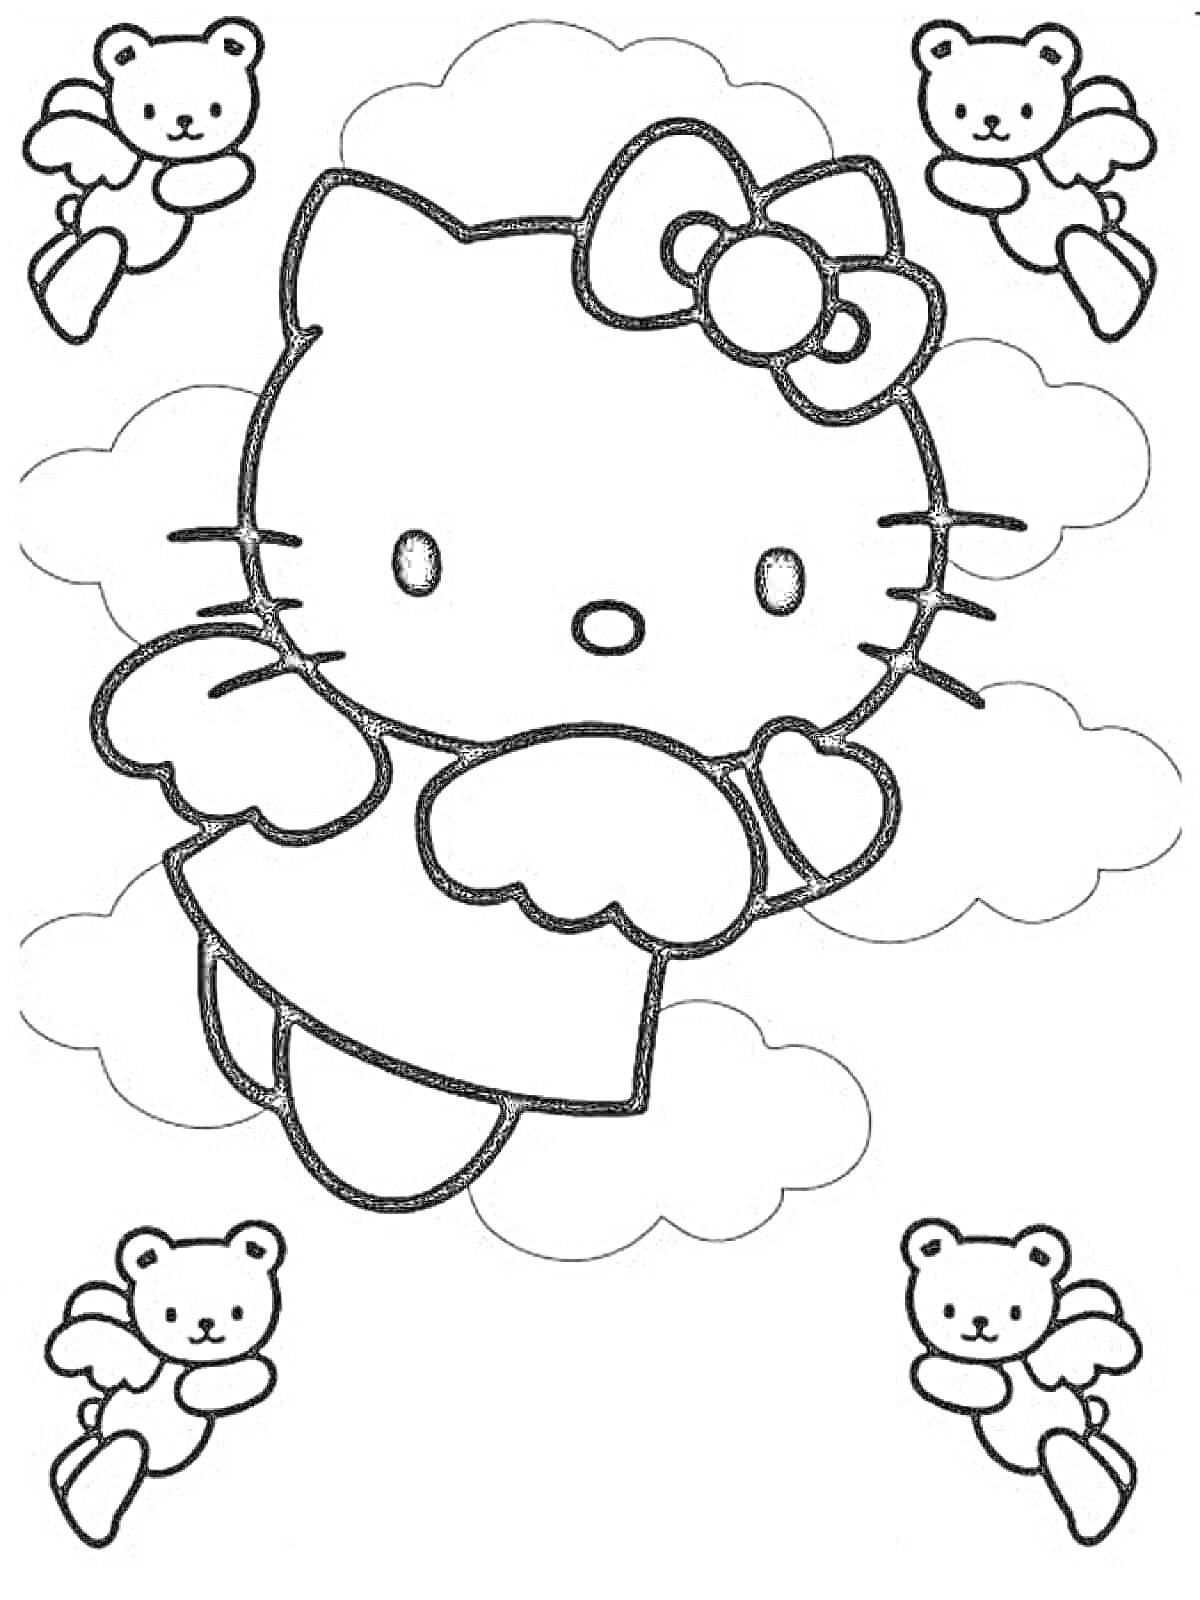 Раскраска Хелло Китти с крыльями среди облаков и ангелочков-мишек